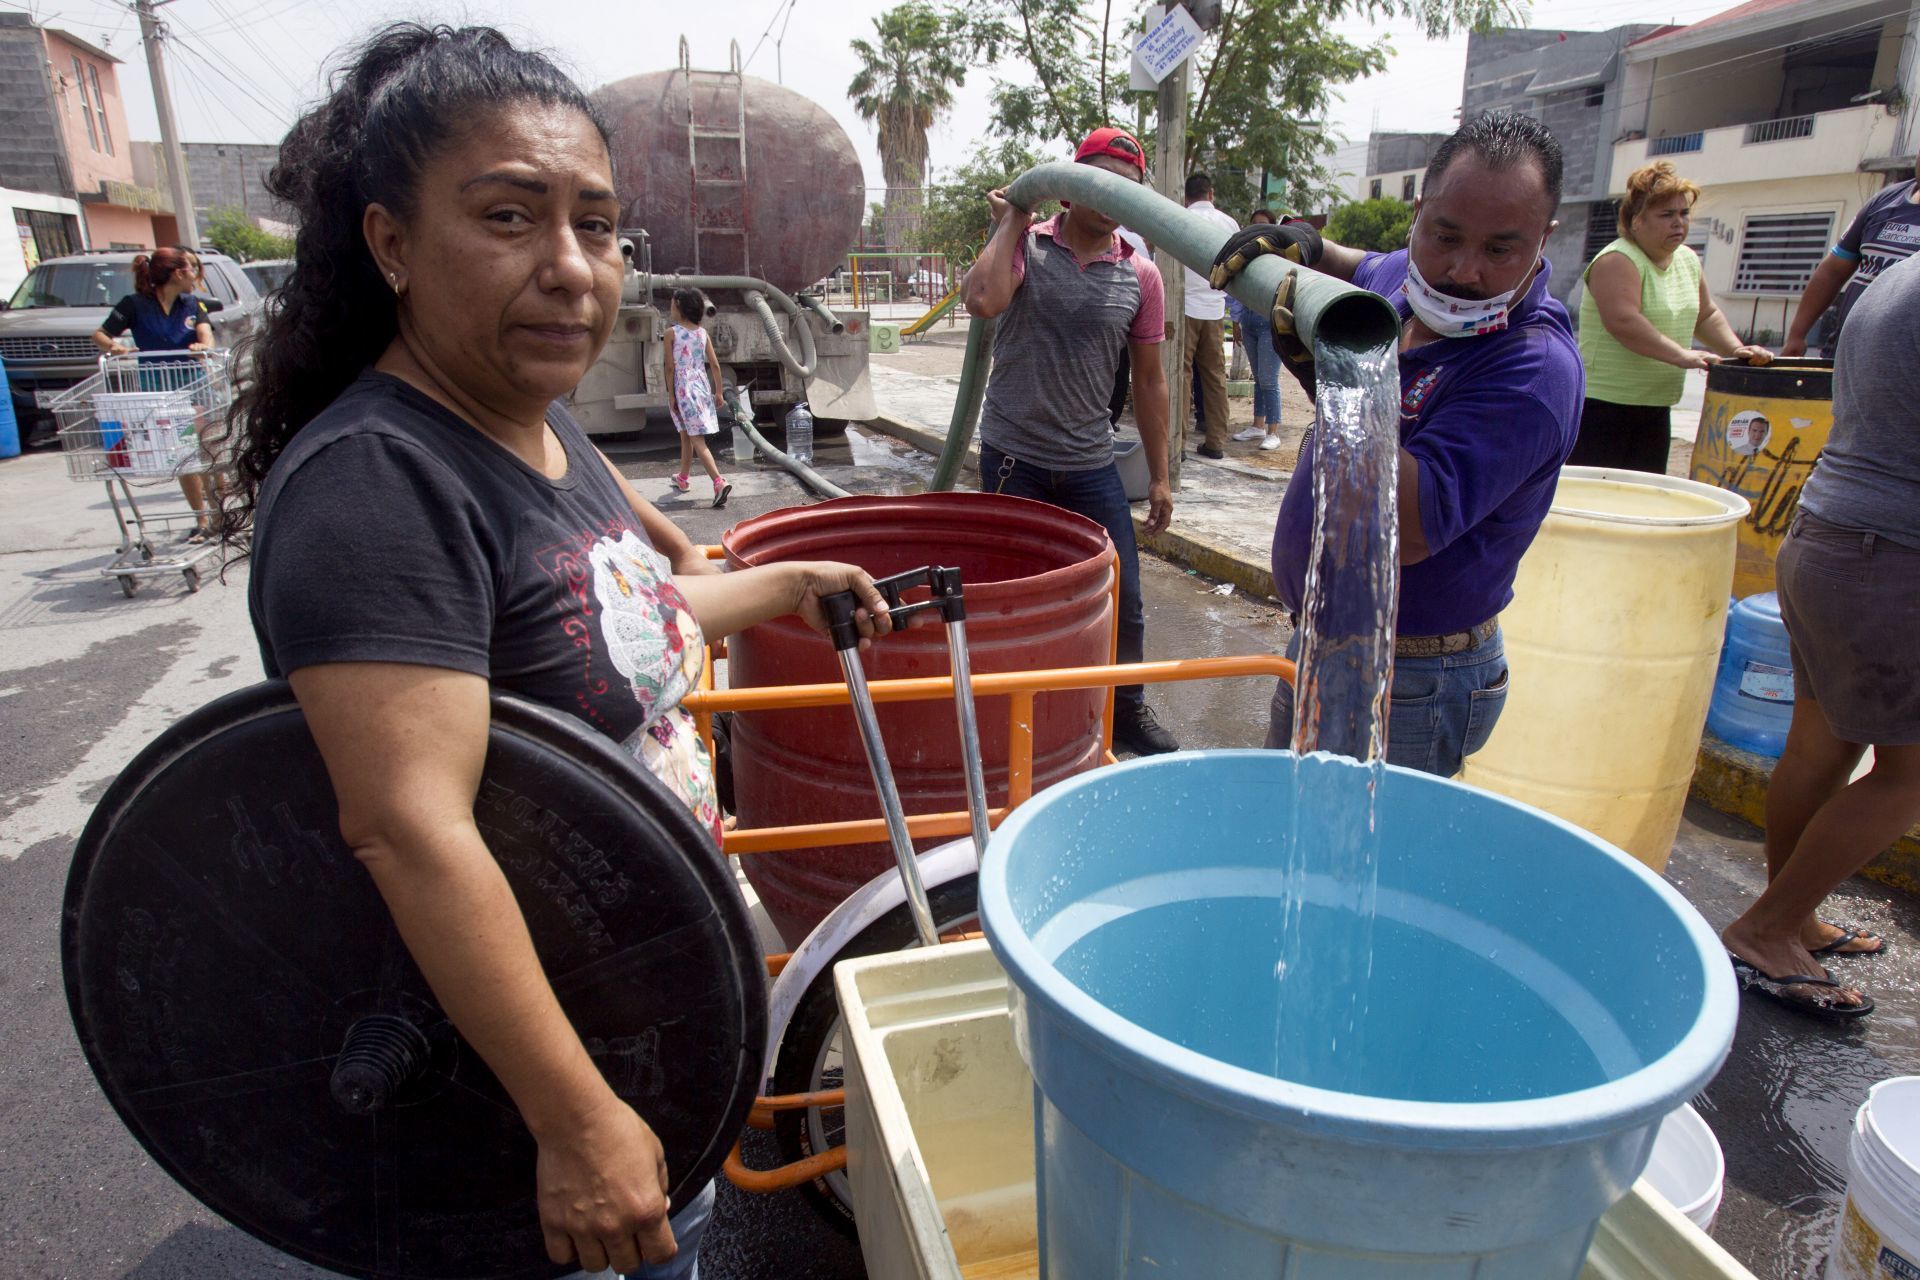 Nuevo León – Congreso de Nuevo León avala multas para quienes desperdicien agua (Animal Político)